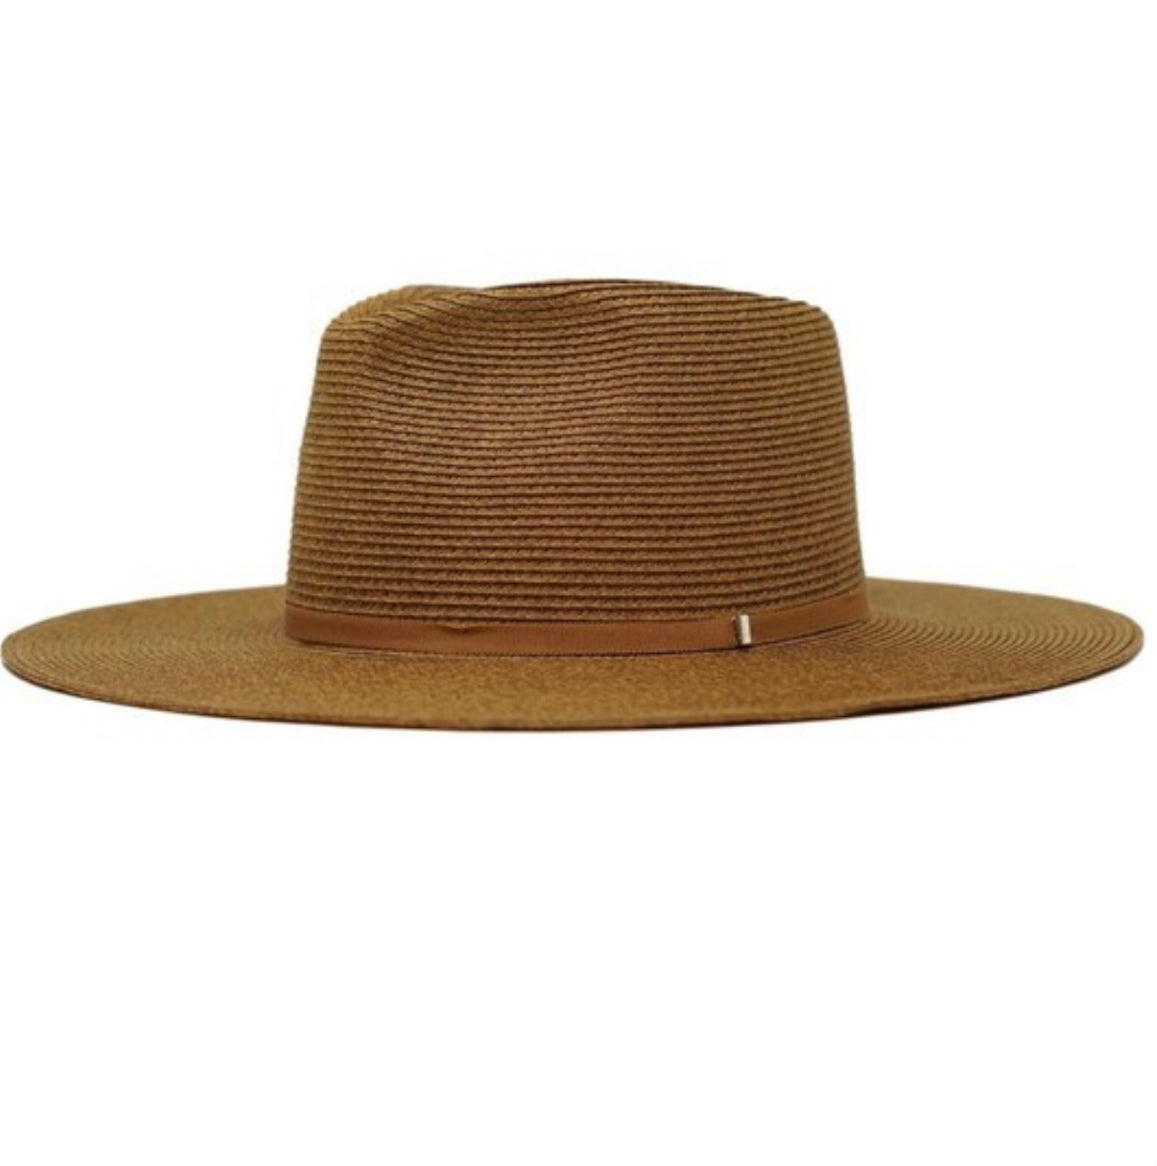 stylish koba rancher straw hat